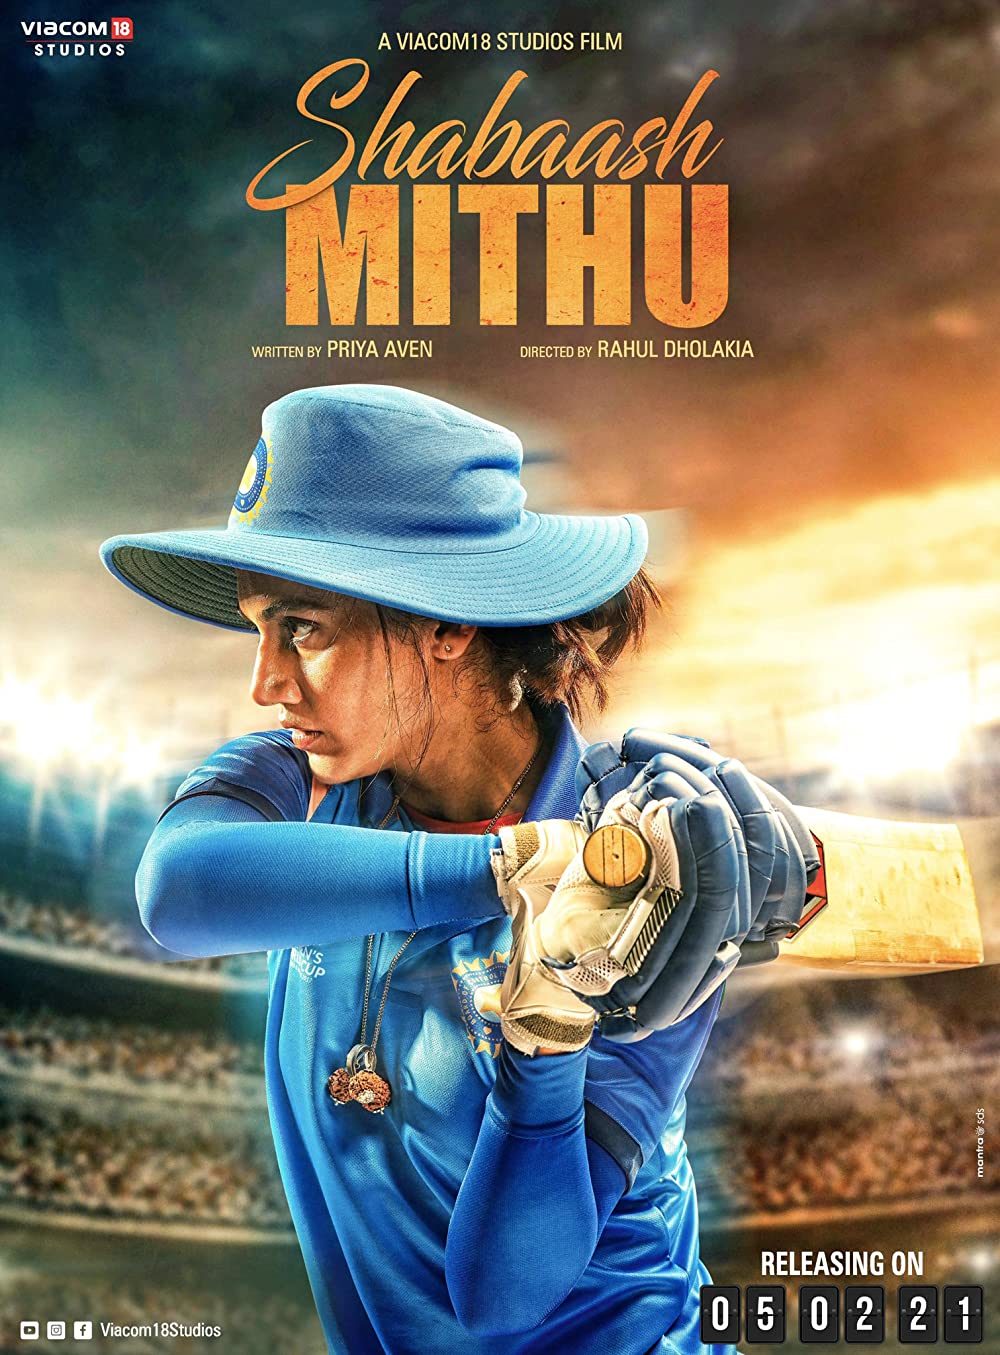 Shabaash Mithu (2022) New Bollywood Hindi Full Movie PreDVD